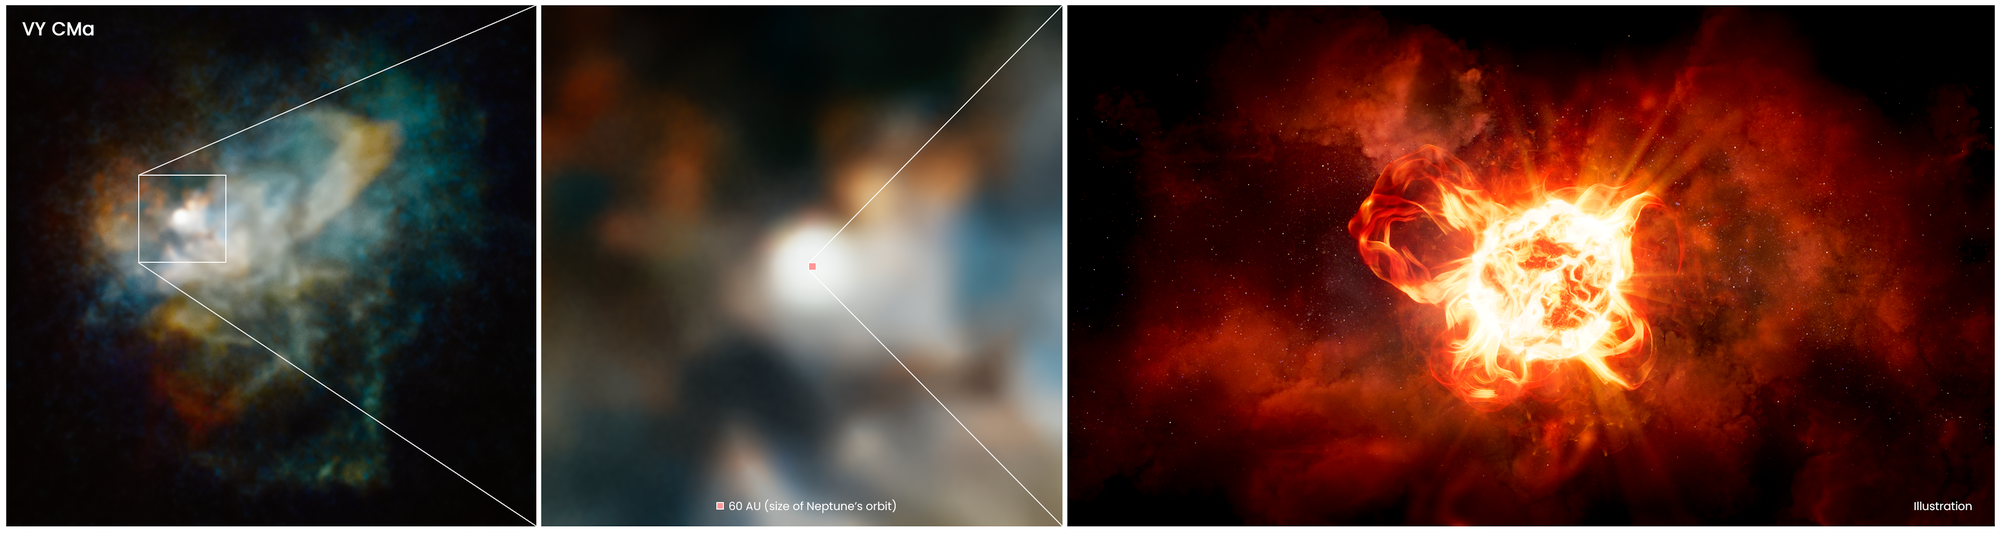 Zoom fotograficzny w kierunku VY Canis Majoris, który jest kombinacją zdjęć uzyskanych teleskopem Hubble'a i grafiki-wizji artystycznej samej gwiazdy